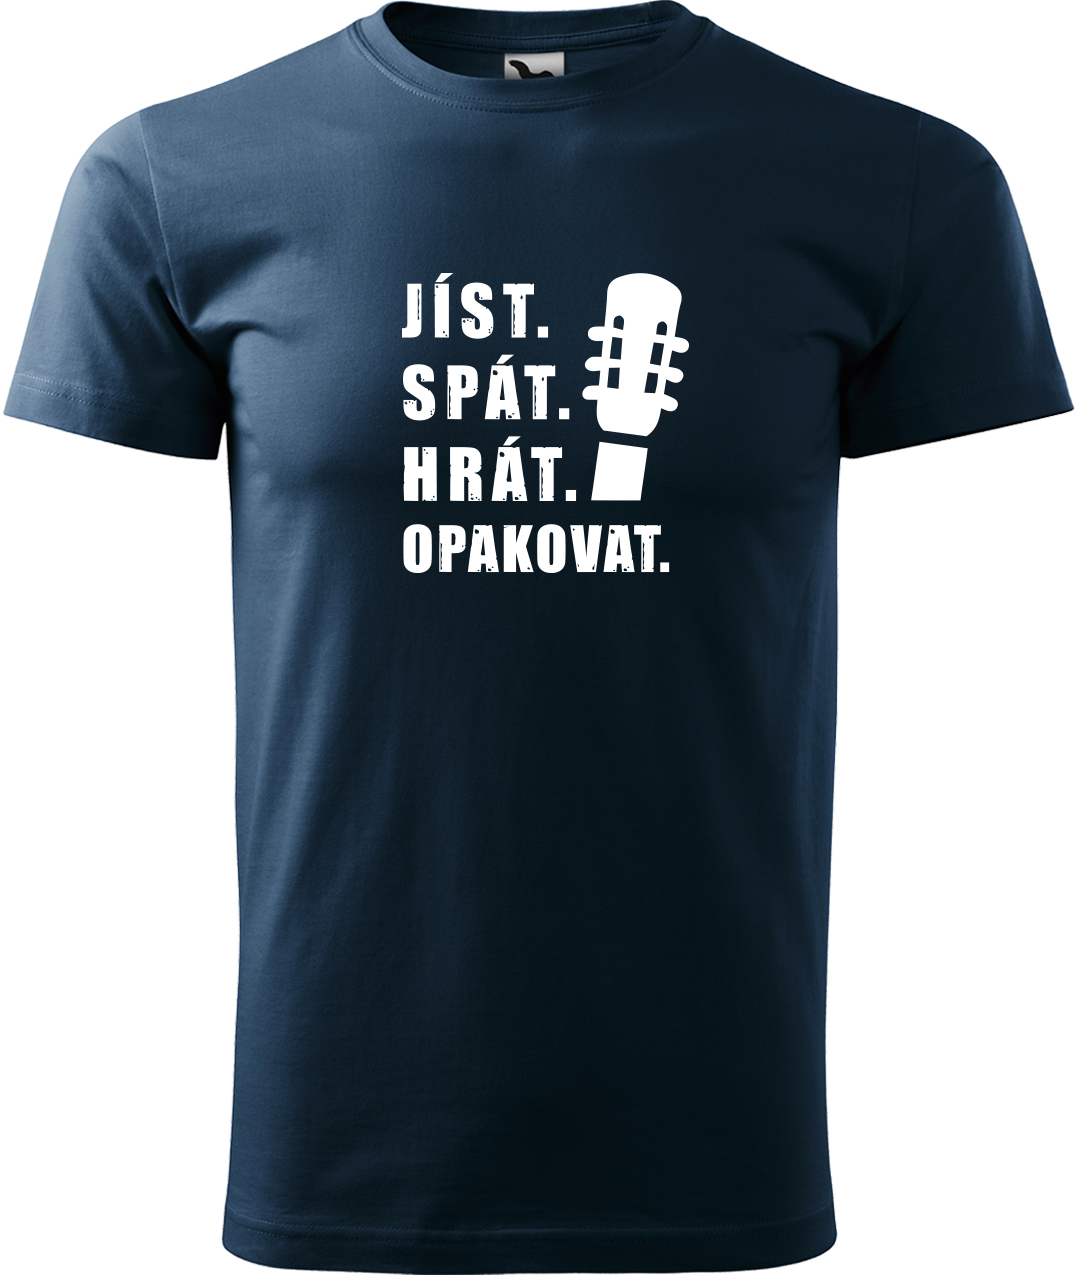 Pánské tričko s kytarou - Jíst, spát, hrát, opakovat. Velikost: 4XL, Barva: Námořní modrá (02), Střih: pánský